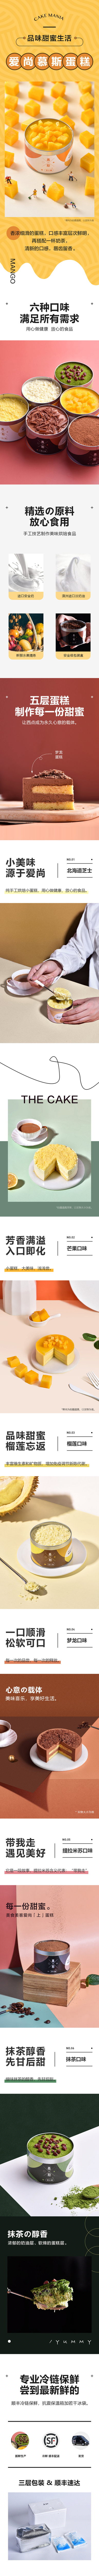 12张橙色系食品的详情页长图设计!